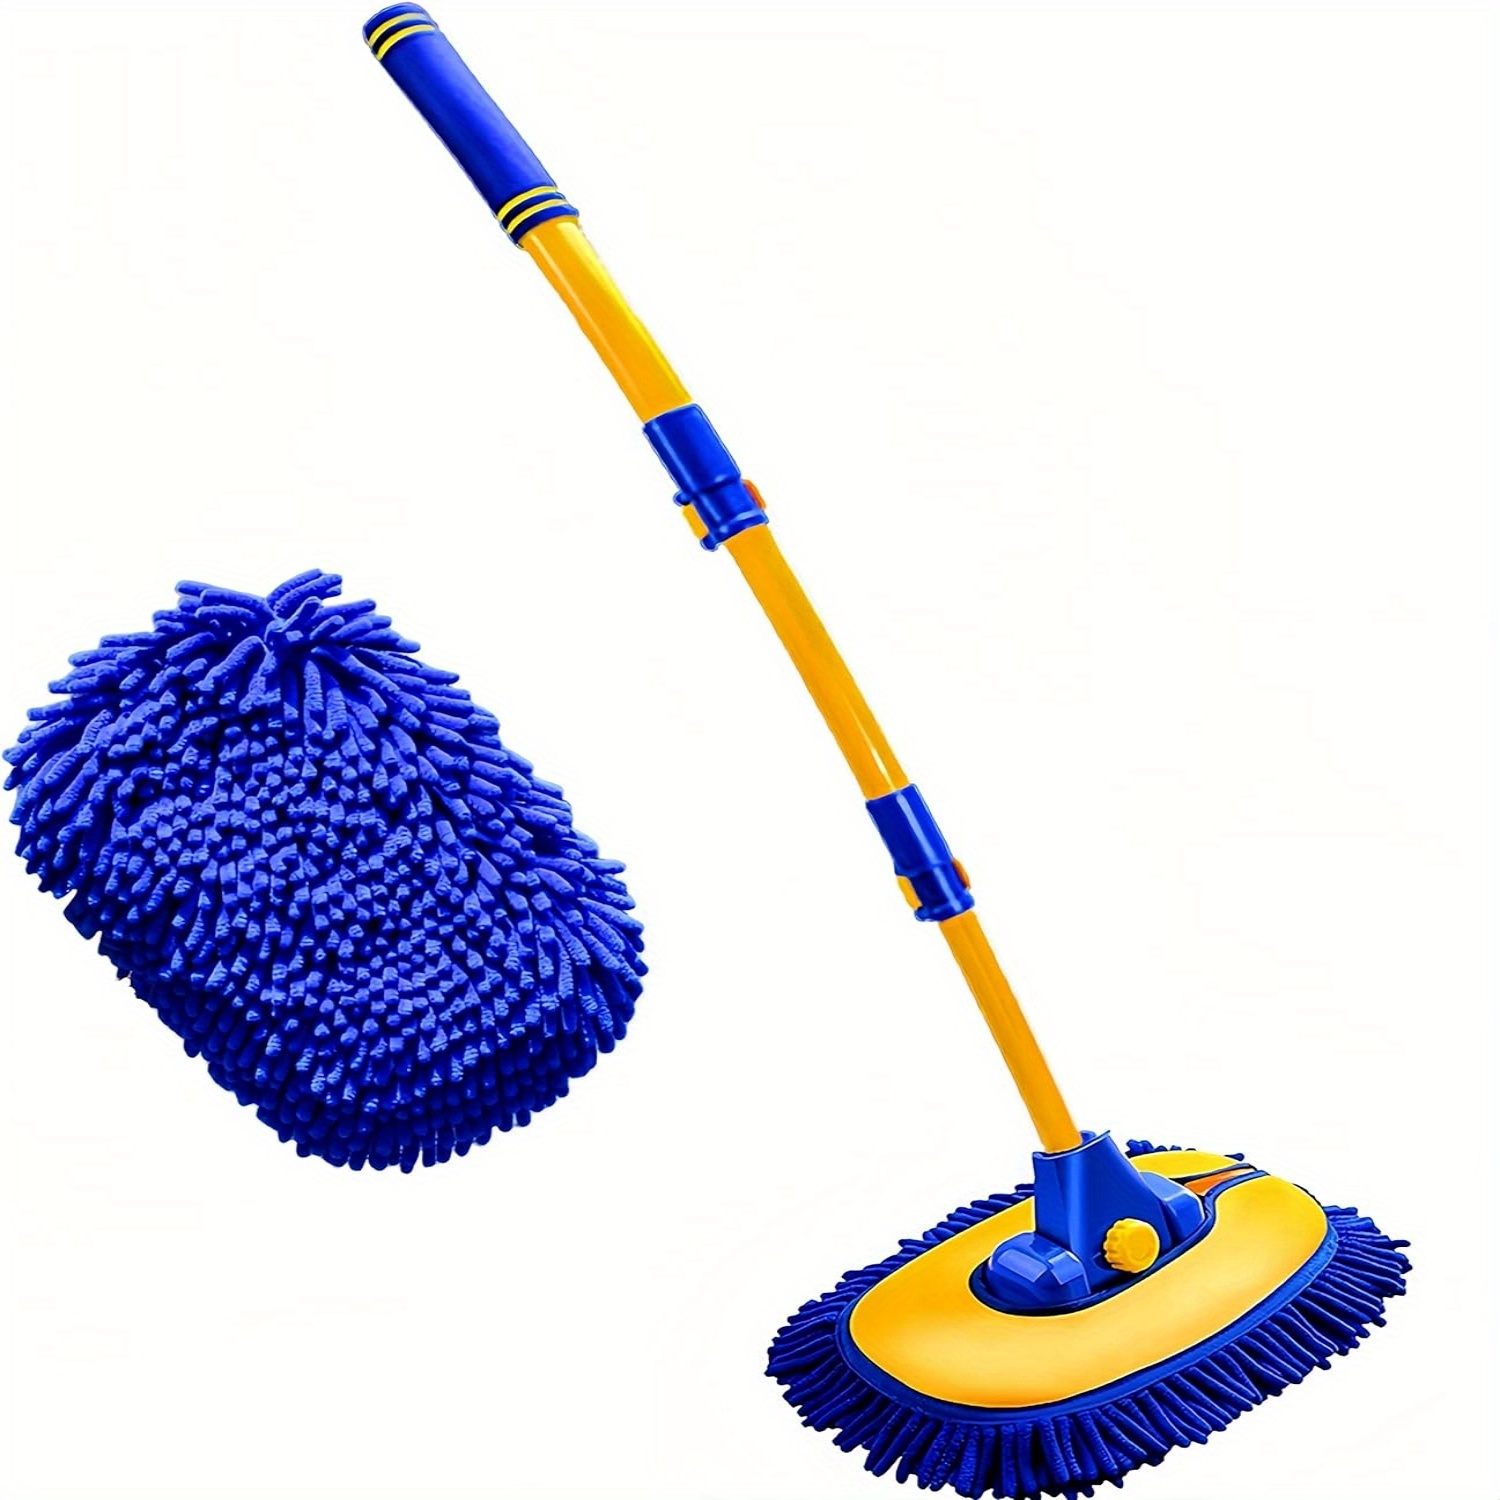 Fochutech Car Wash Brush, Car Cleaning Kit, 360° Spin Car Mop, Microfi